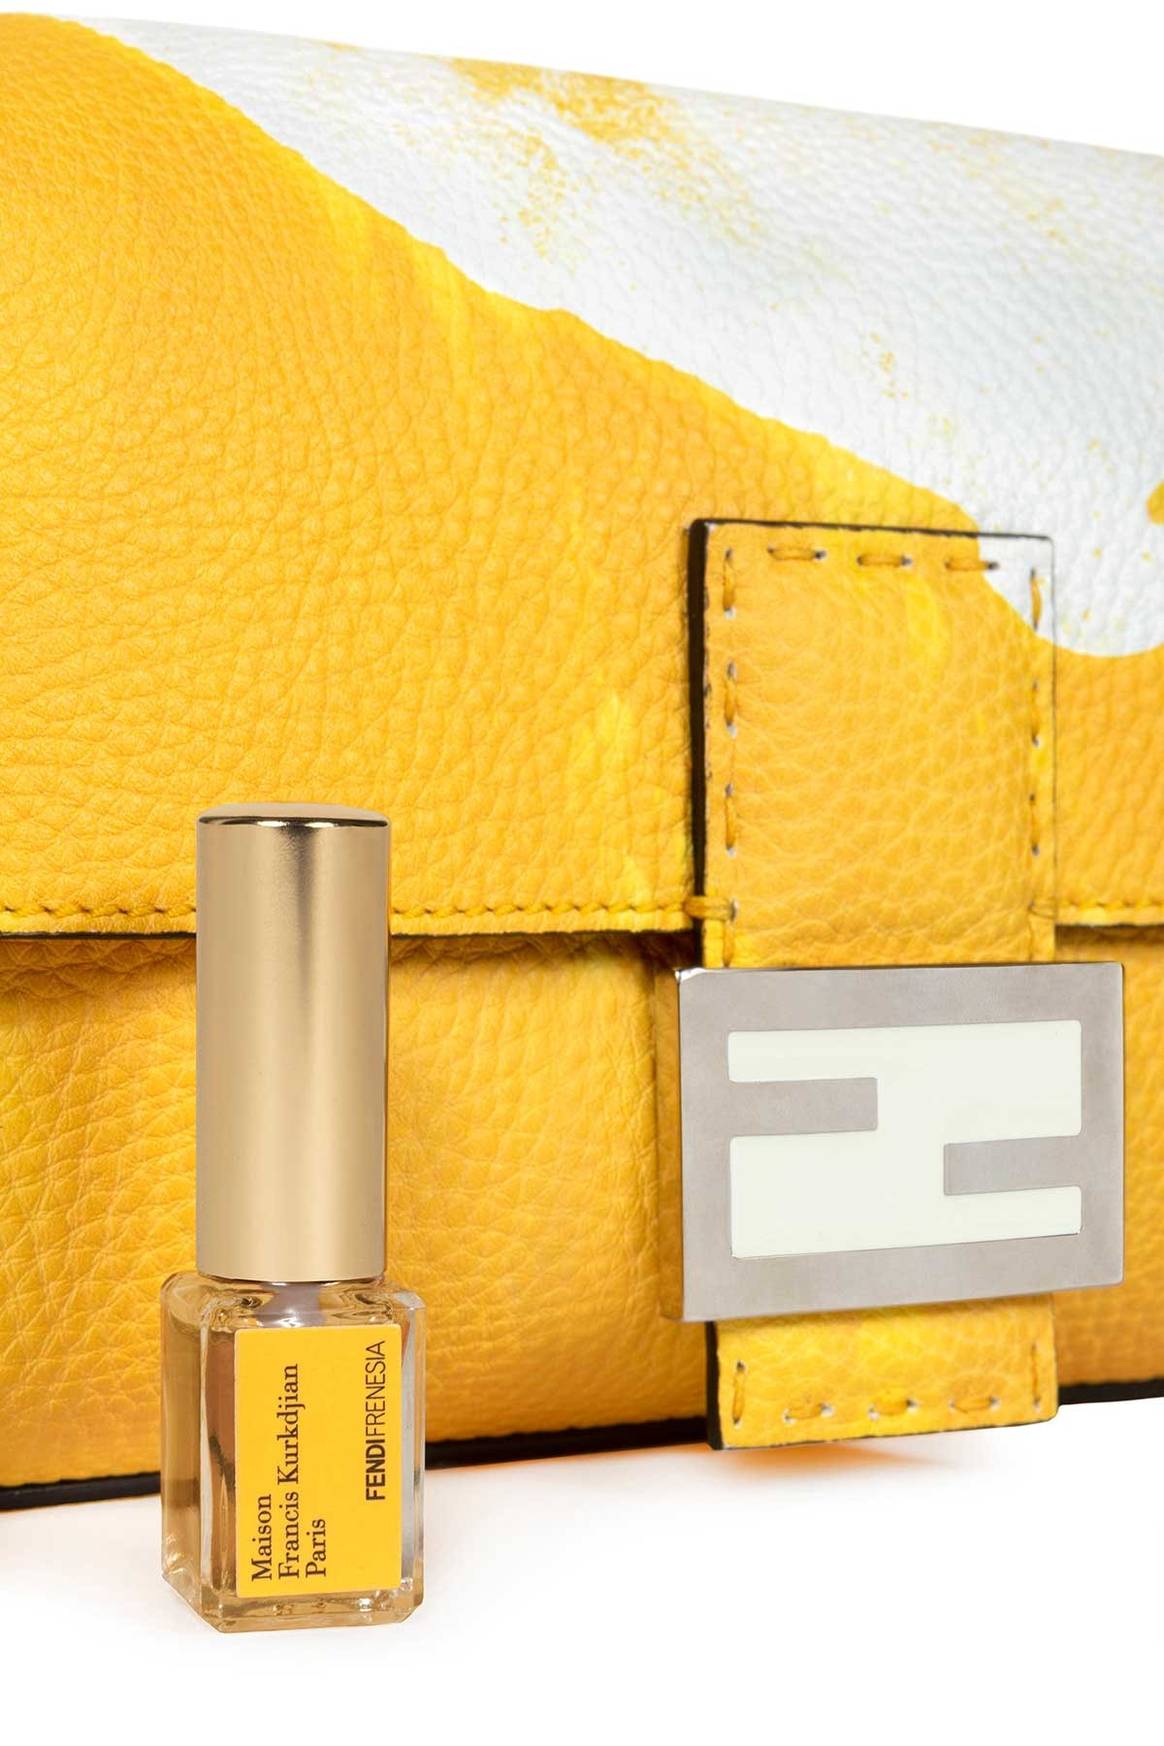 Fendi debuts scented Baguette bag